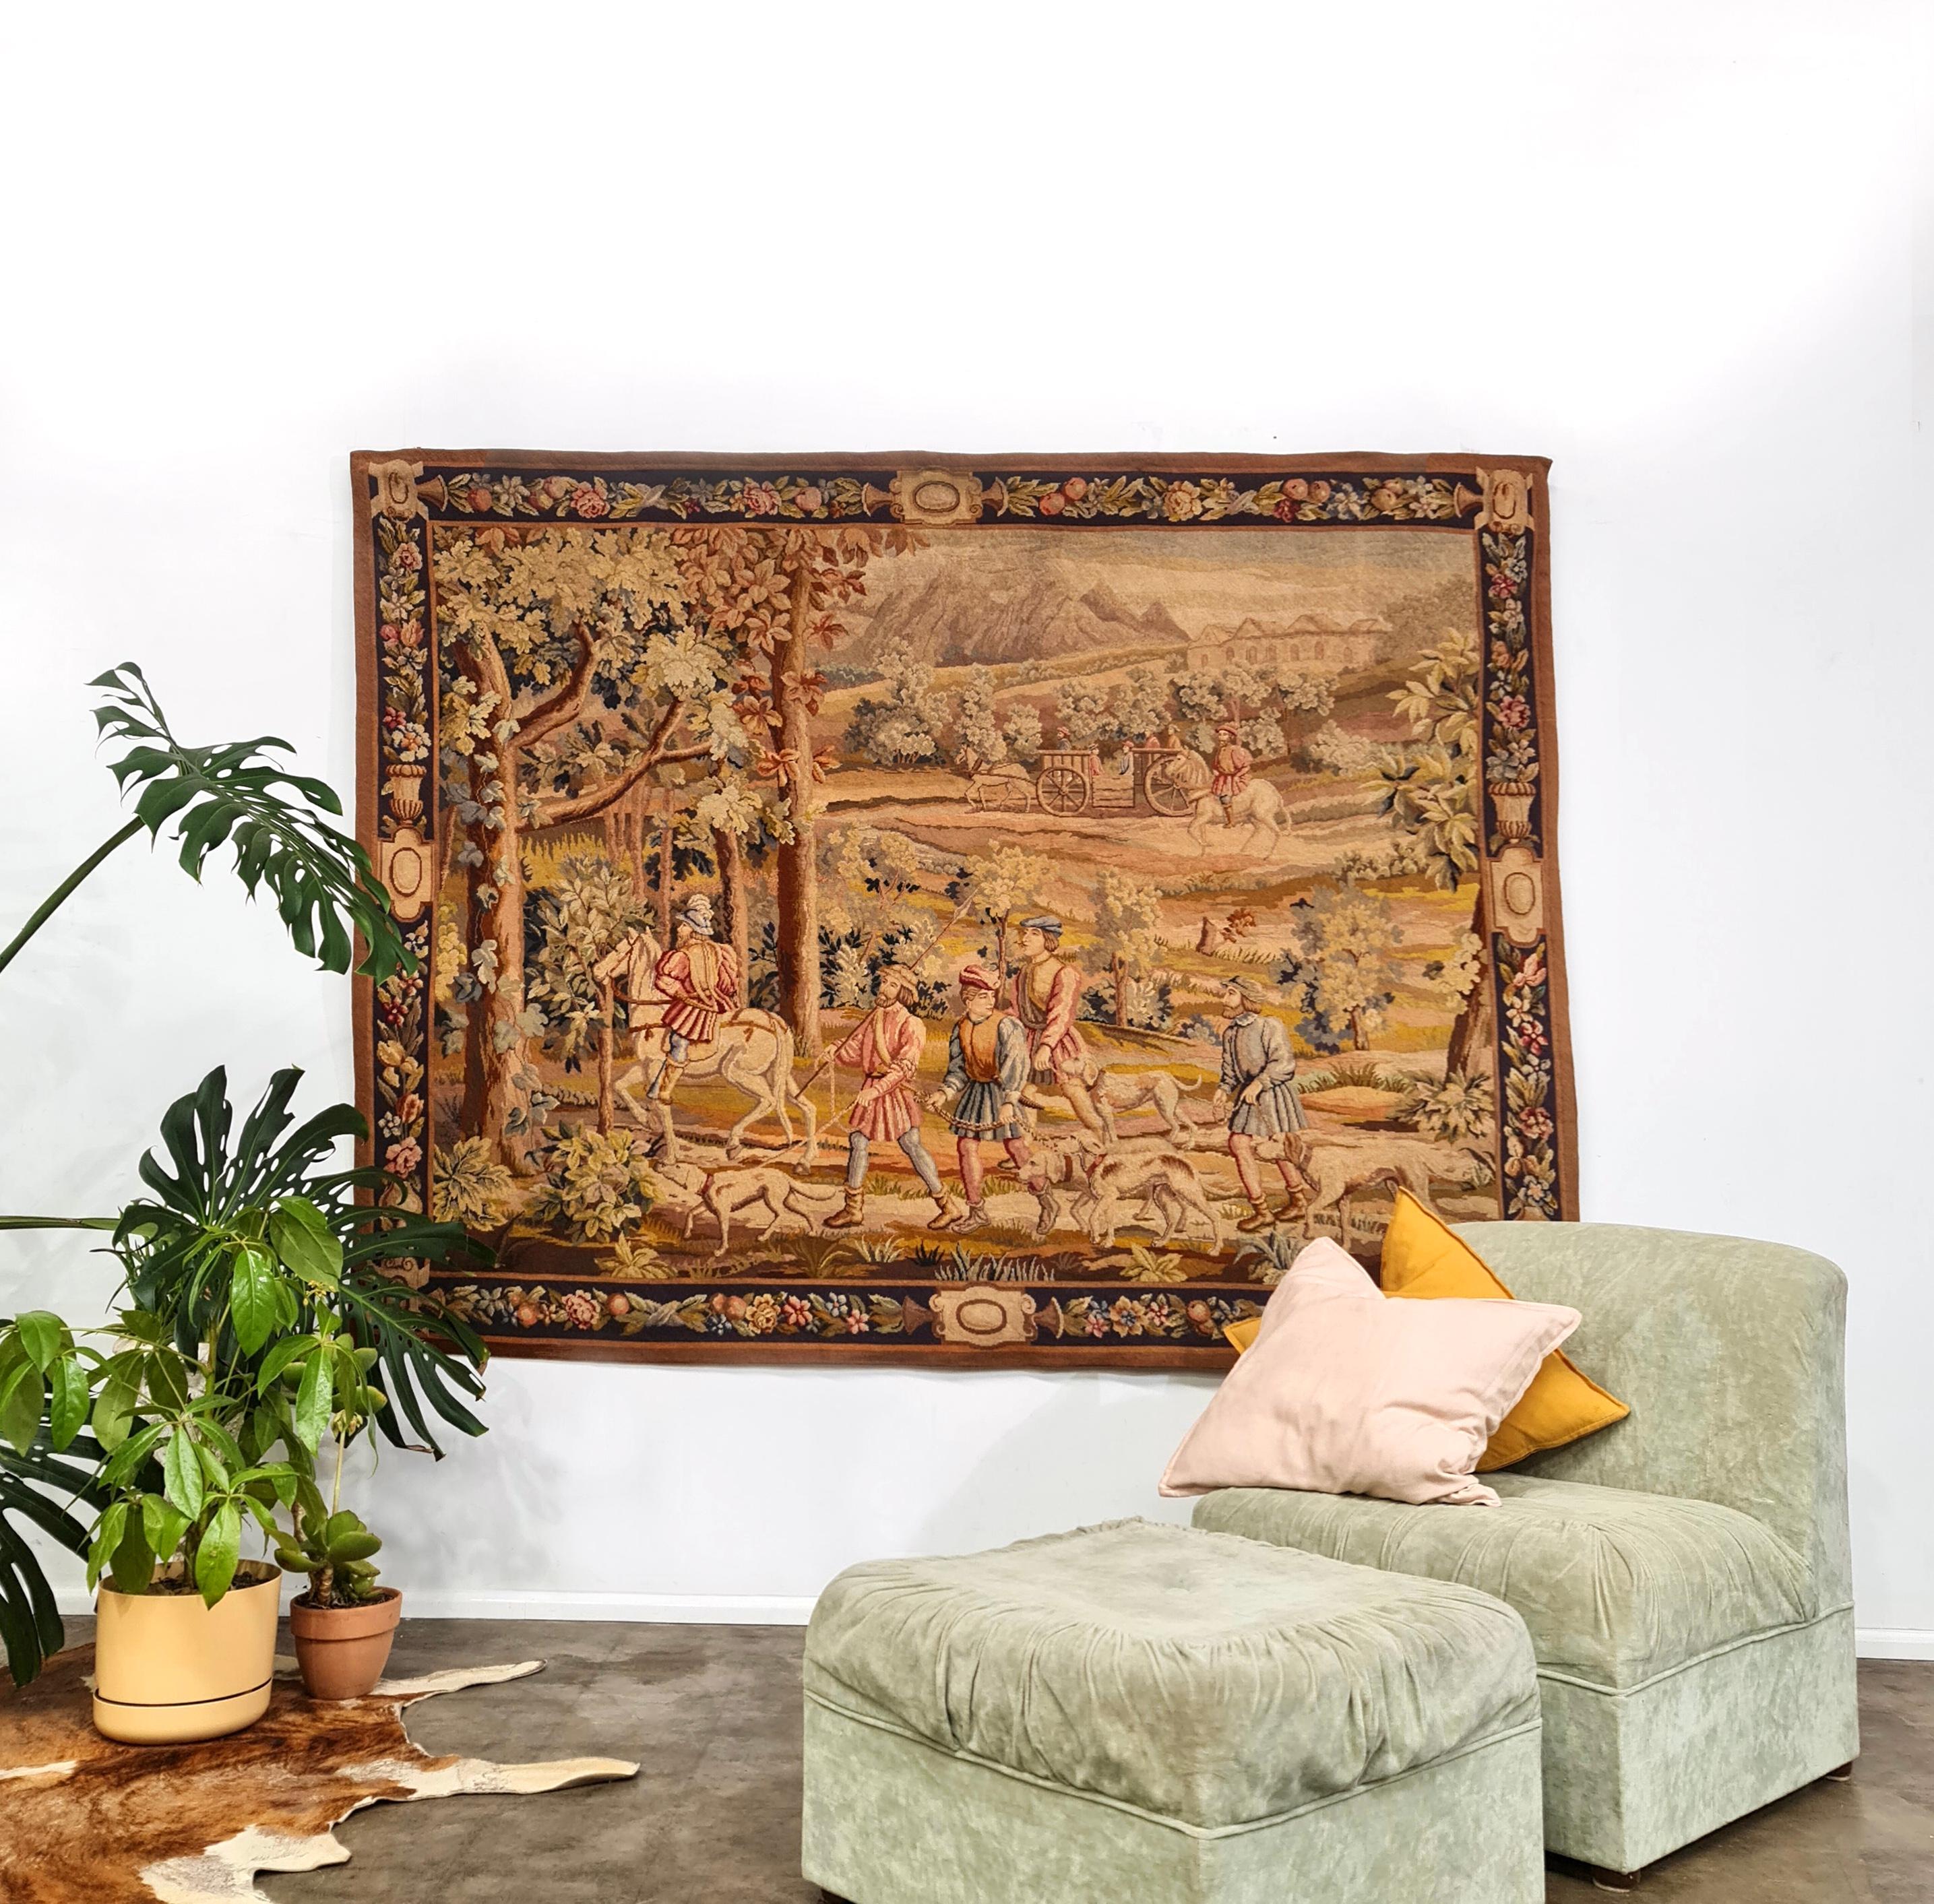 Magnifique tapisserie d'Aubusson tissée à la main en 1860-1870. Acheté à St Ouen Paris.
Des tons chauds et frais de terre, avec des détails étonnants, le tout en excellent état. 
Cette pièce a déjà été recouverte d'une toile de lin et peut être